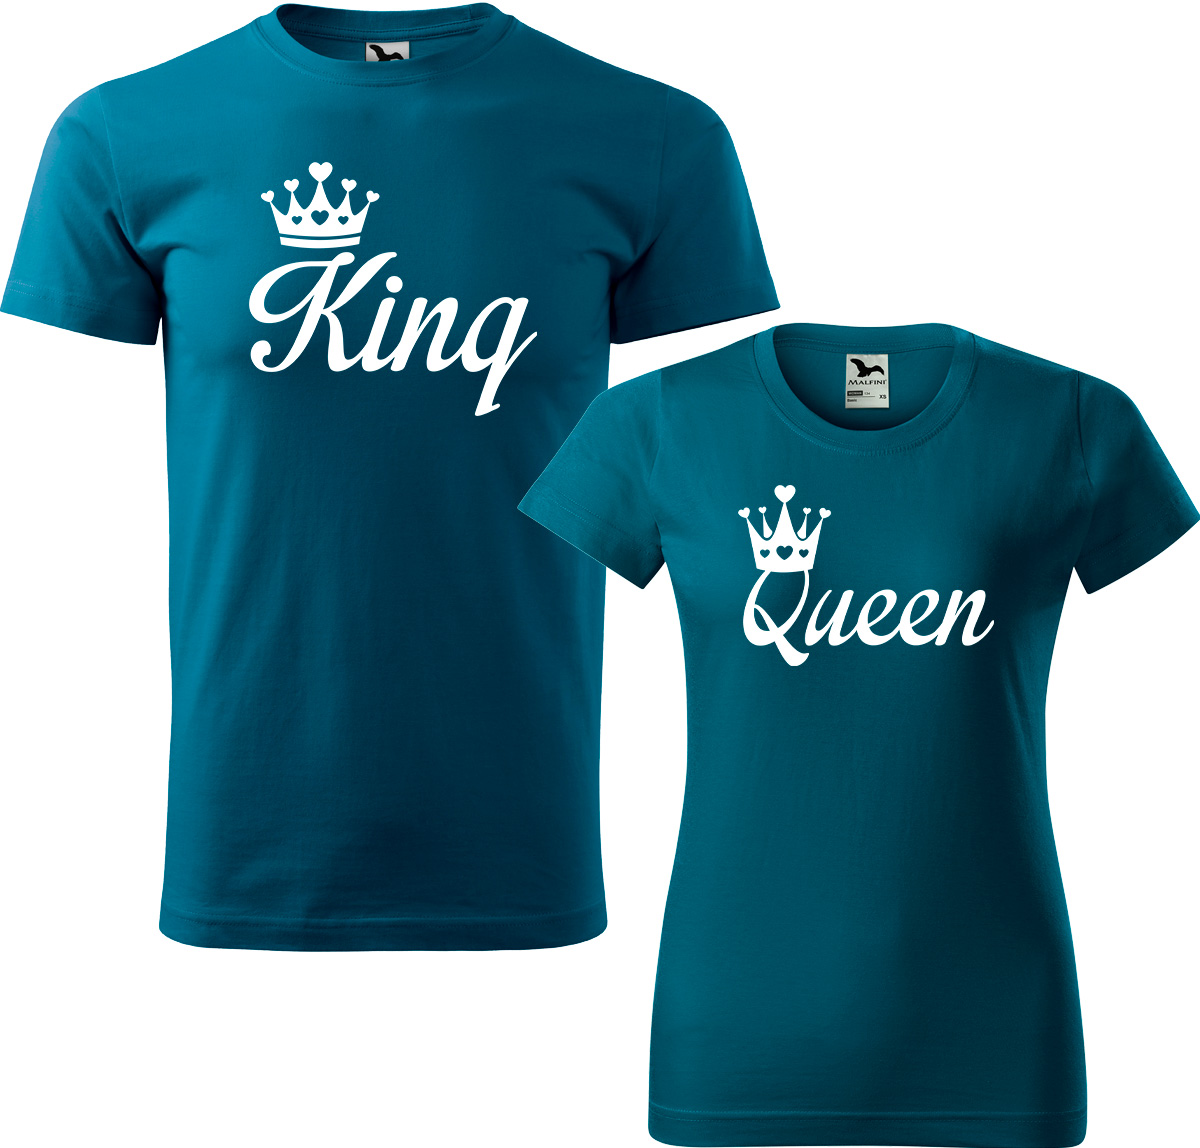 Trička pro páry - King a queen Barva: Petrolejová (93), Velikost dámské tričko: XL, Velikost pánské tričko: XL